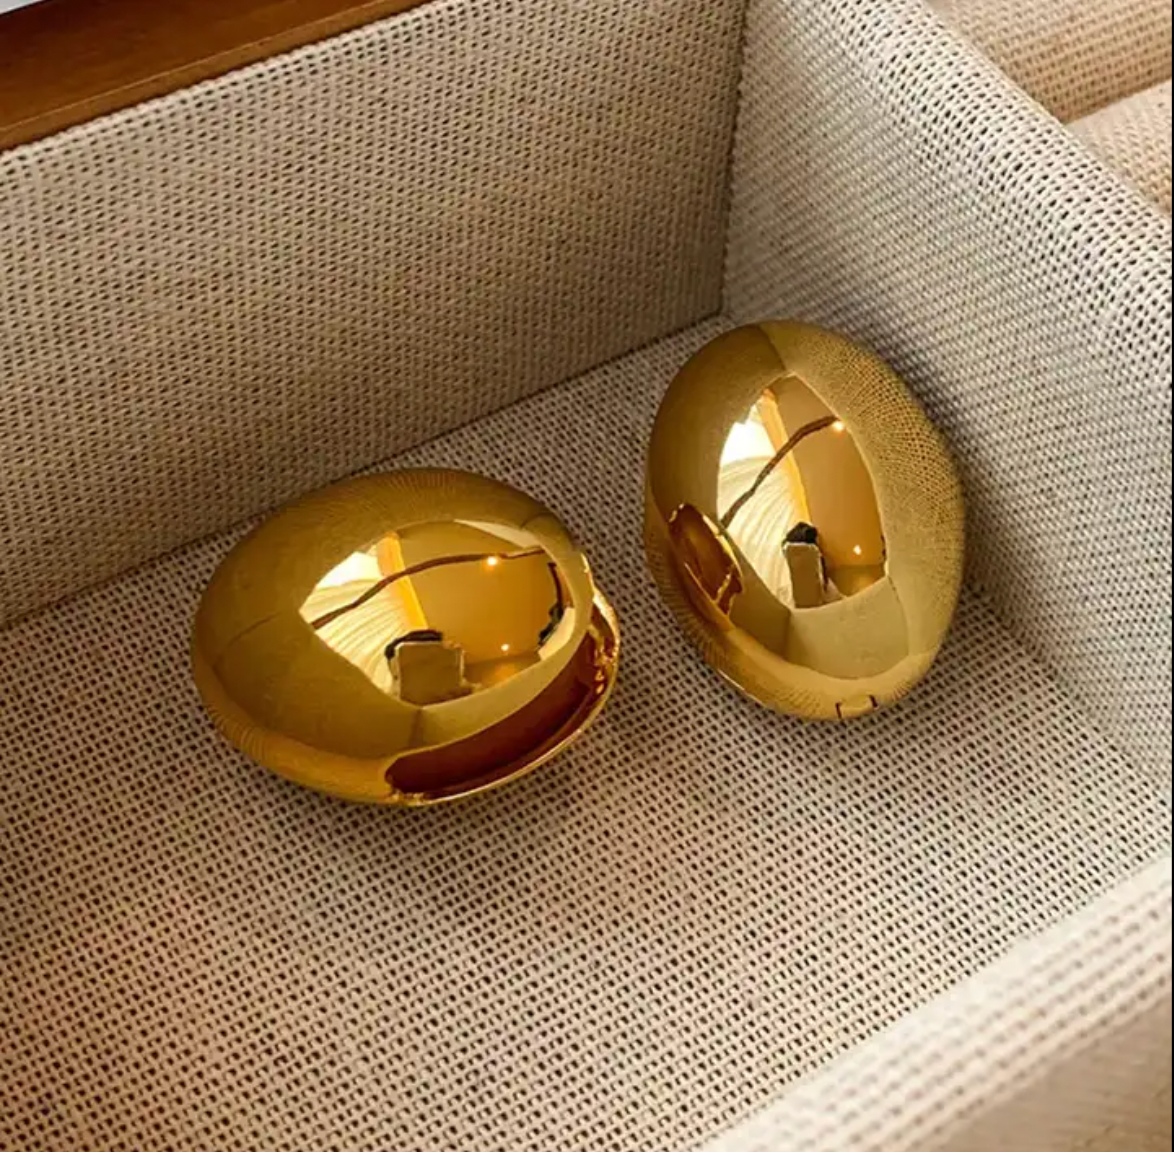 The Orb Earrings in Gold